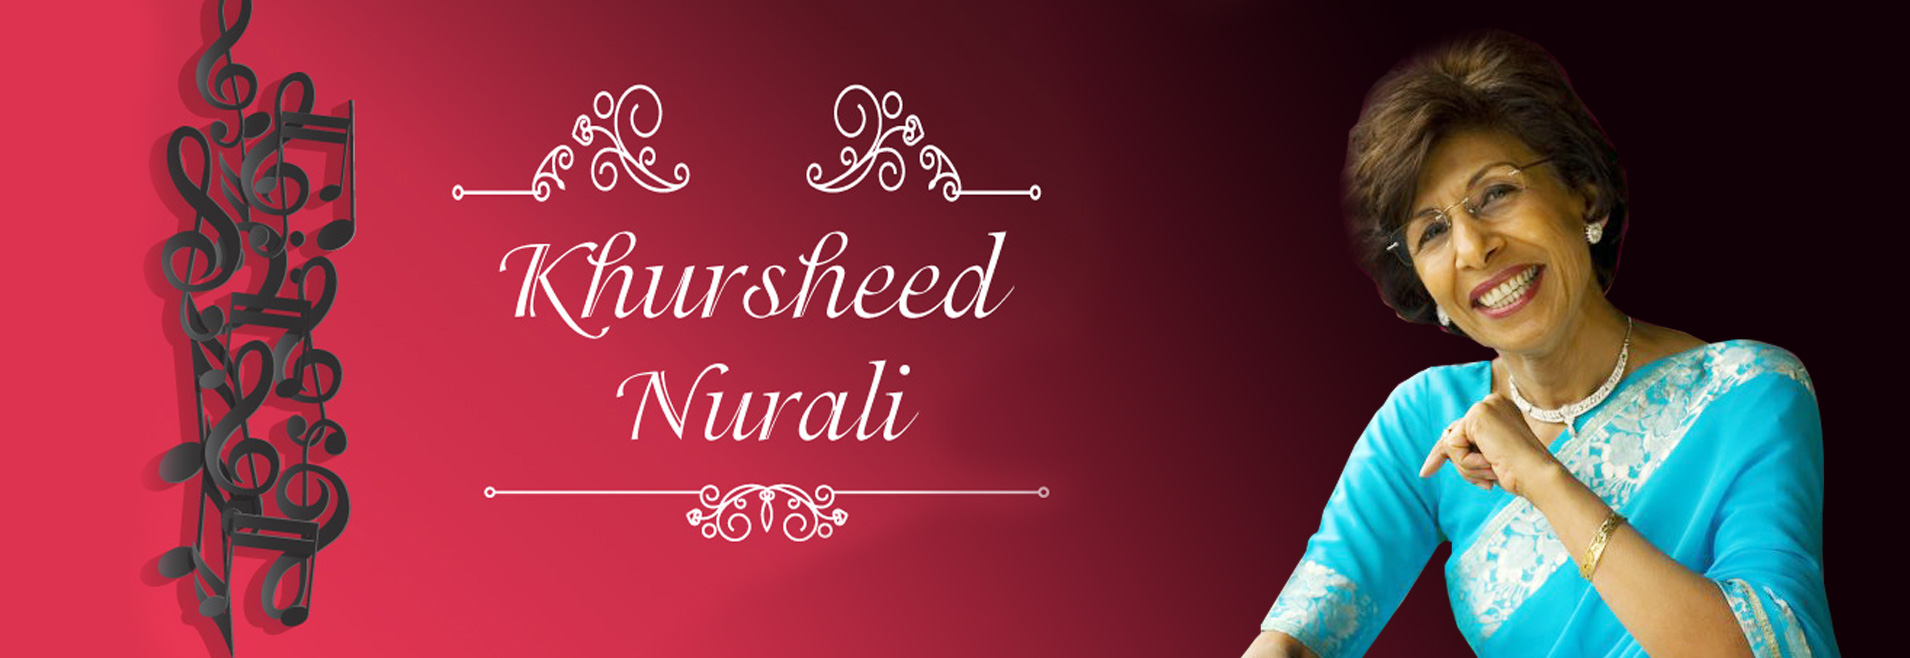 Khursheed Nurali